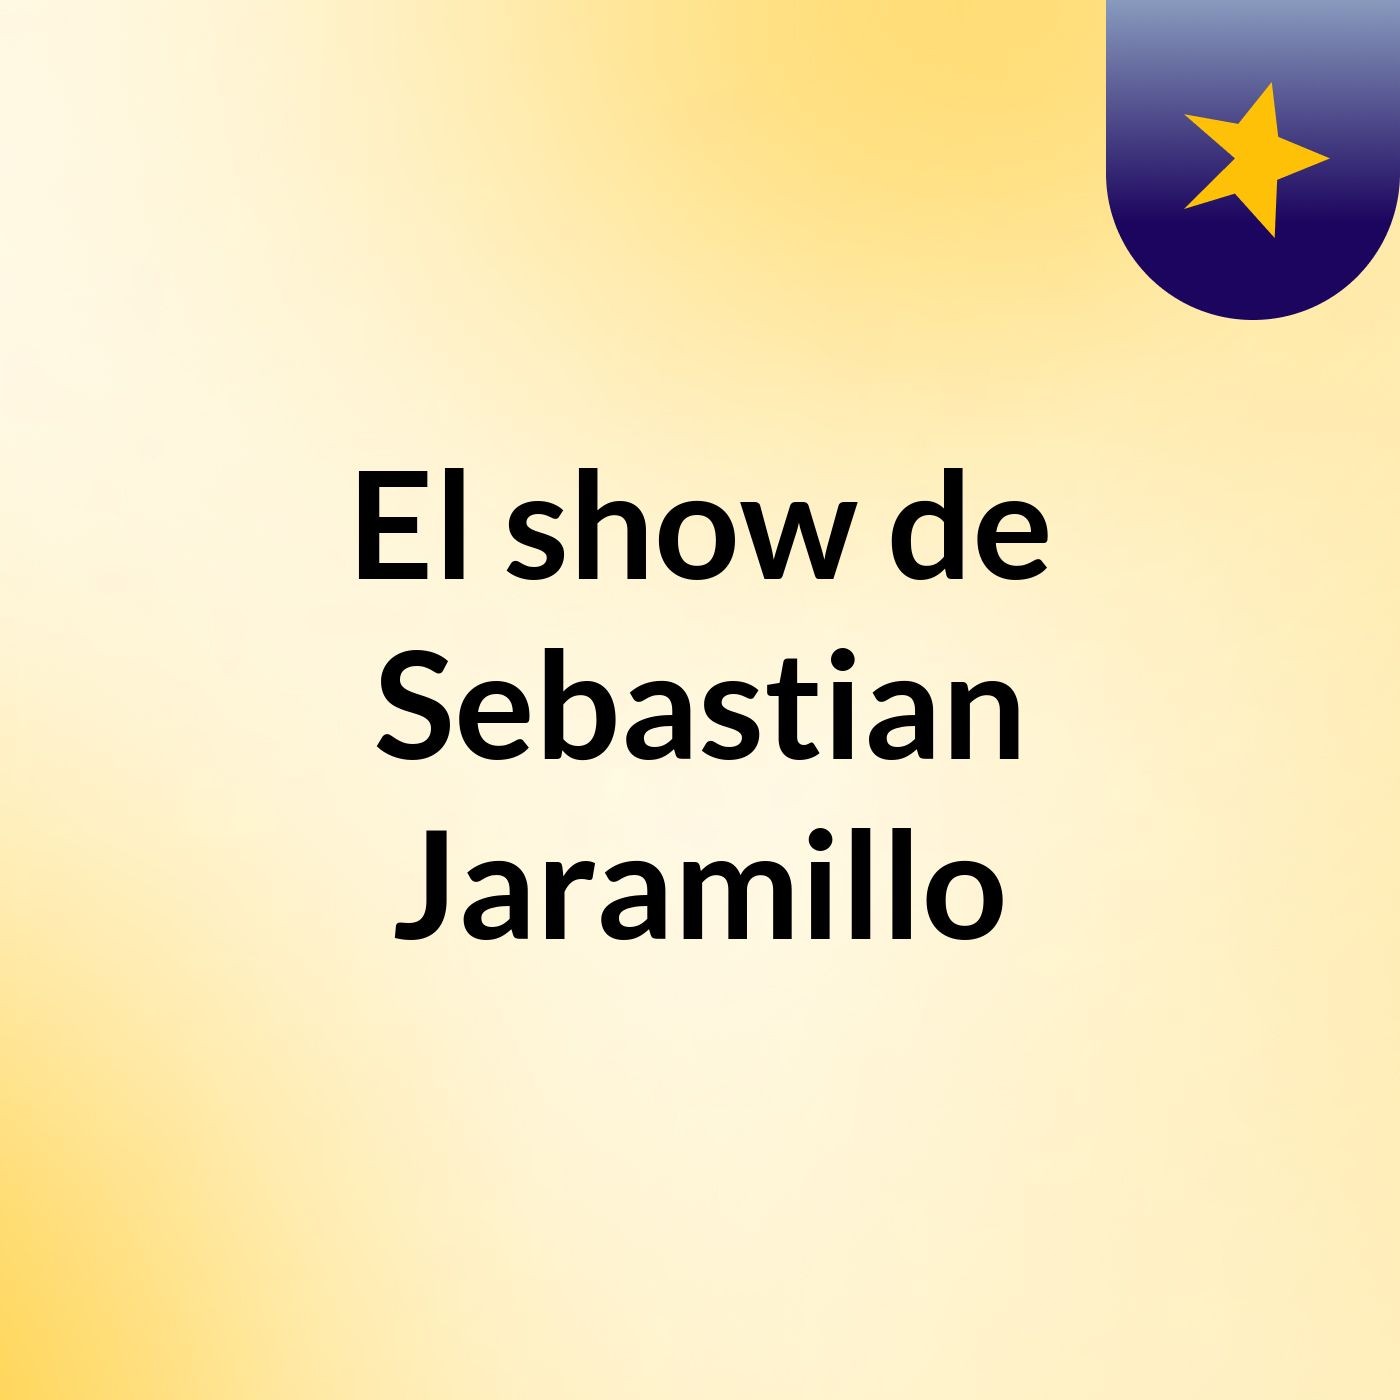 El show de Sebastian Jaramillo